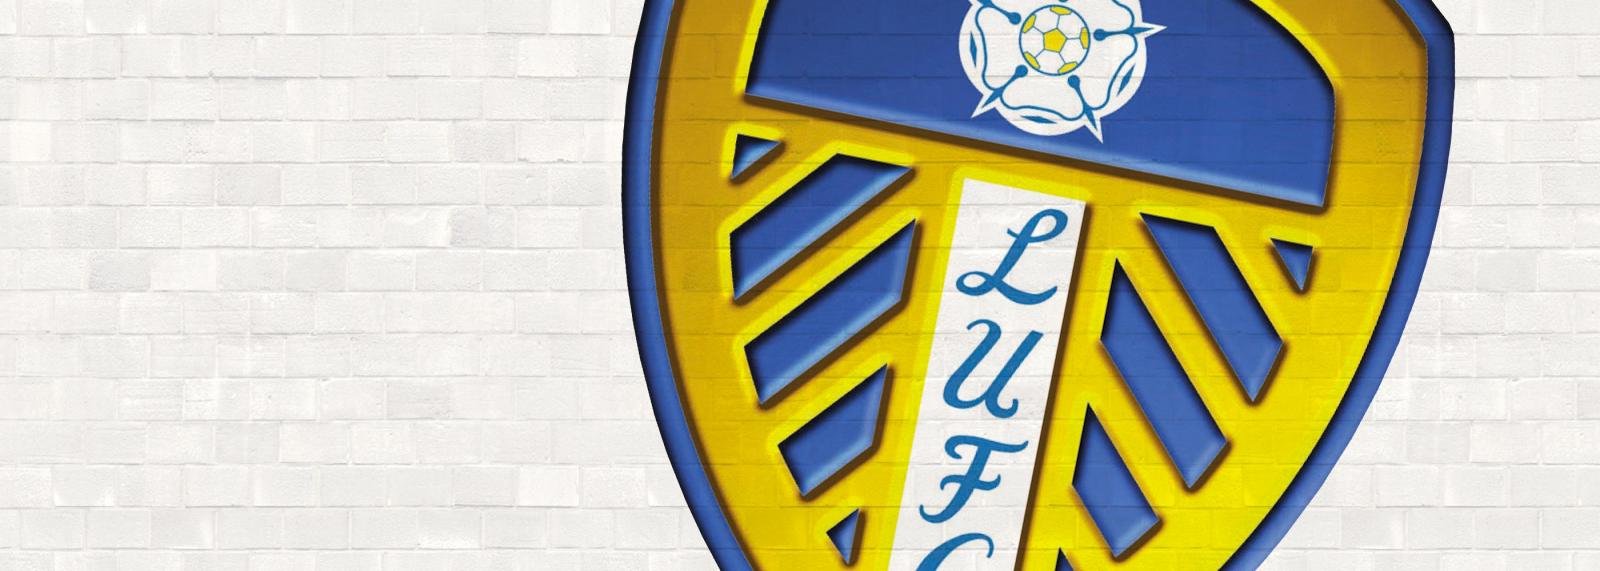 Leeds target Deadline Day move for former Udinese striker